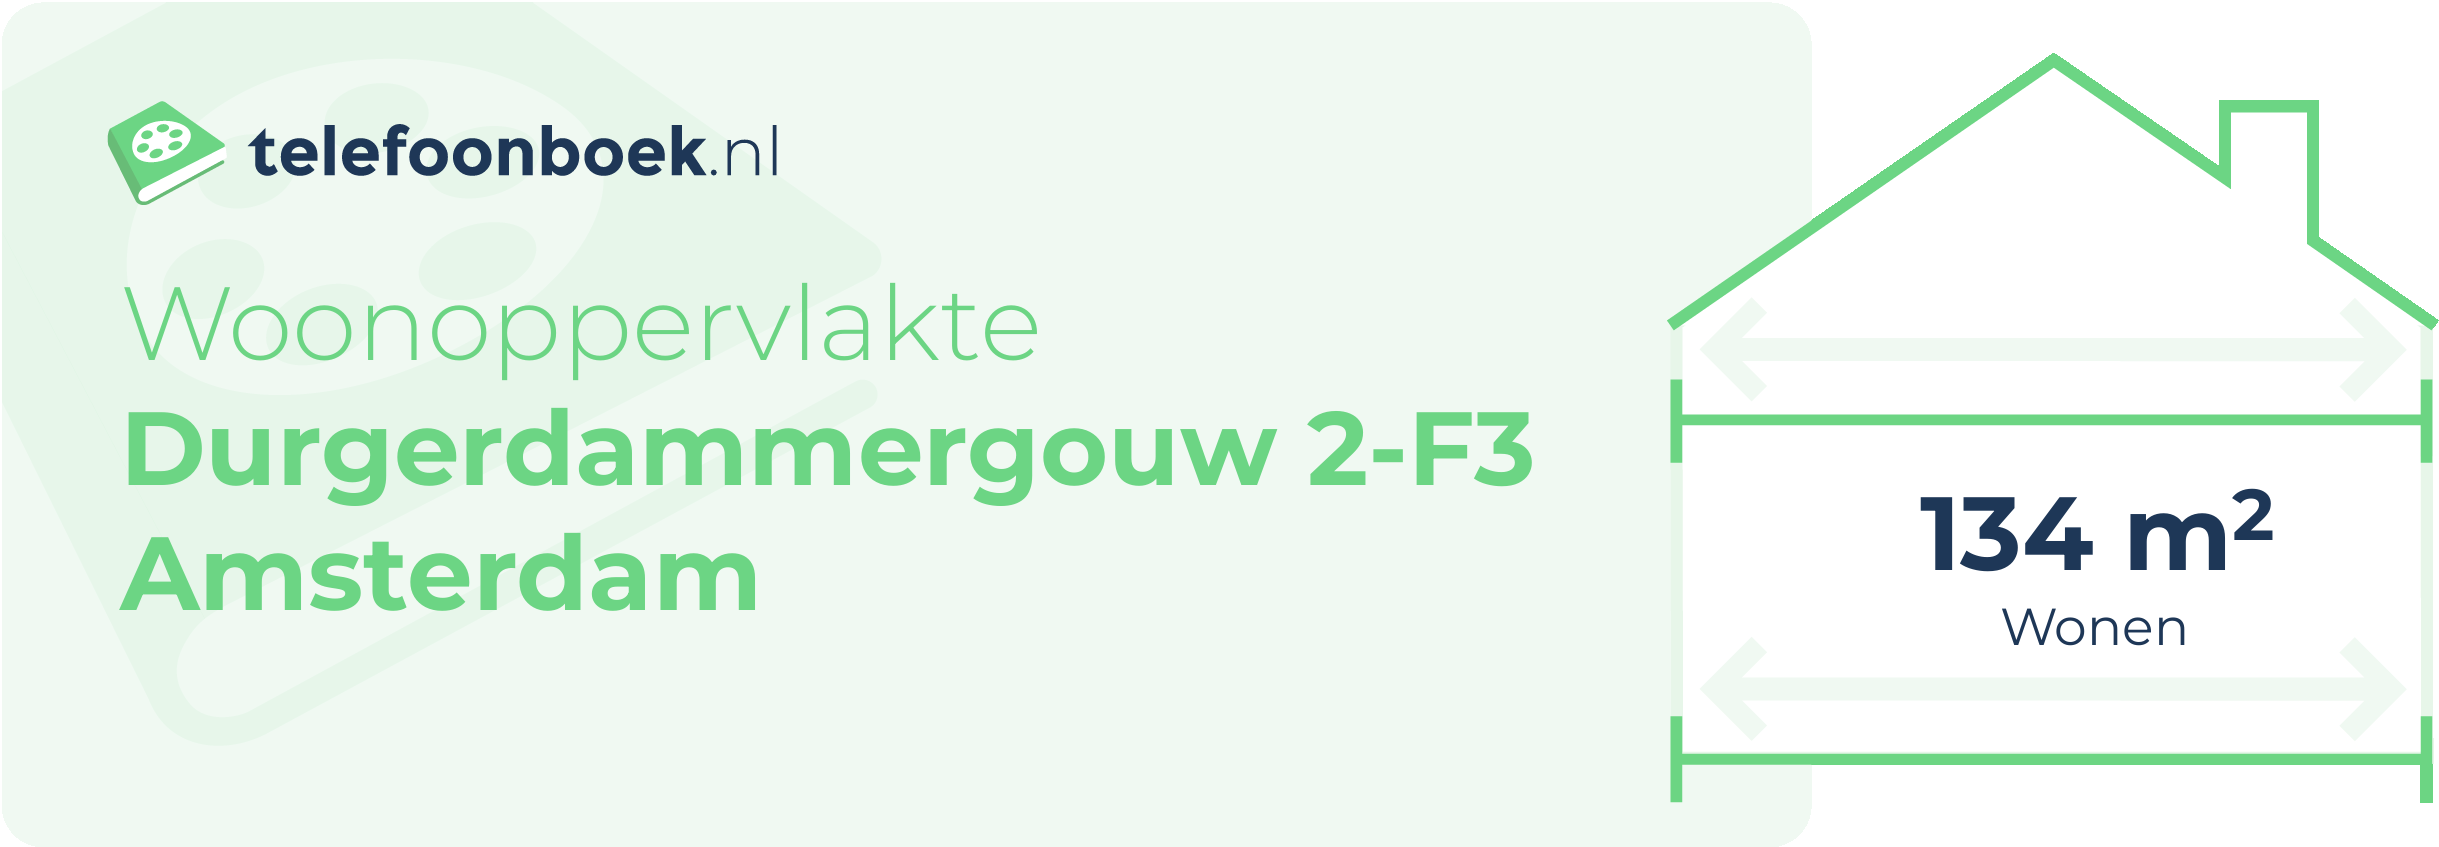 Woonoppervlakte Durgerdammergouw 2-F3 Amsterdam